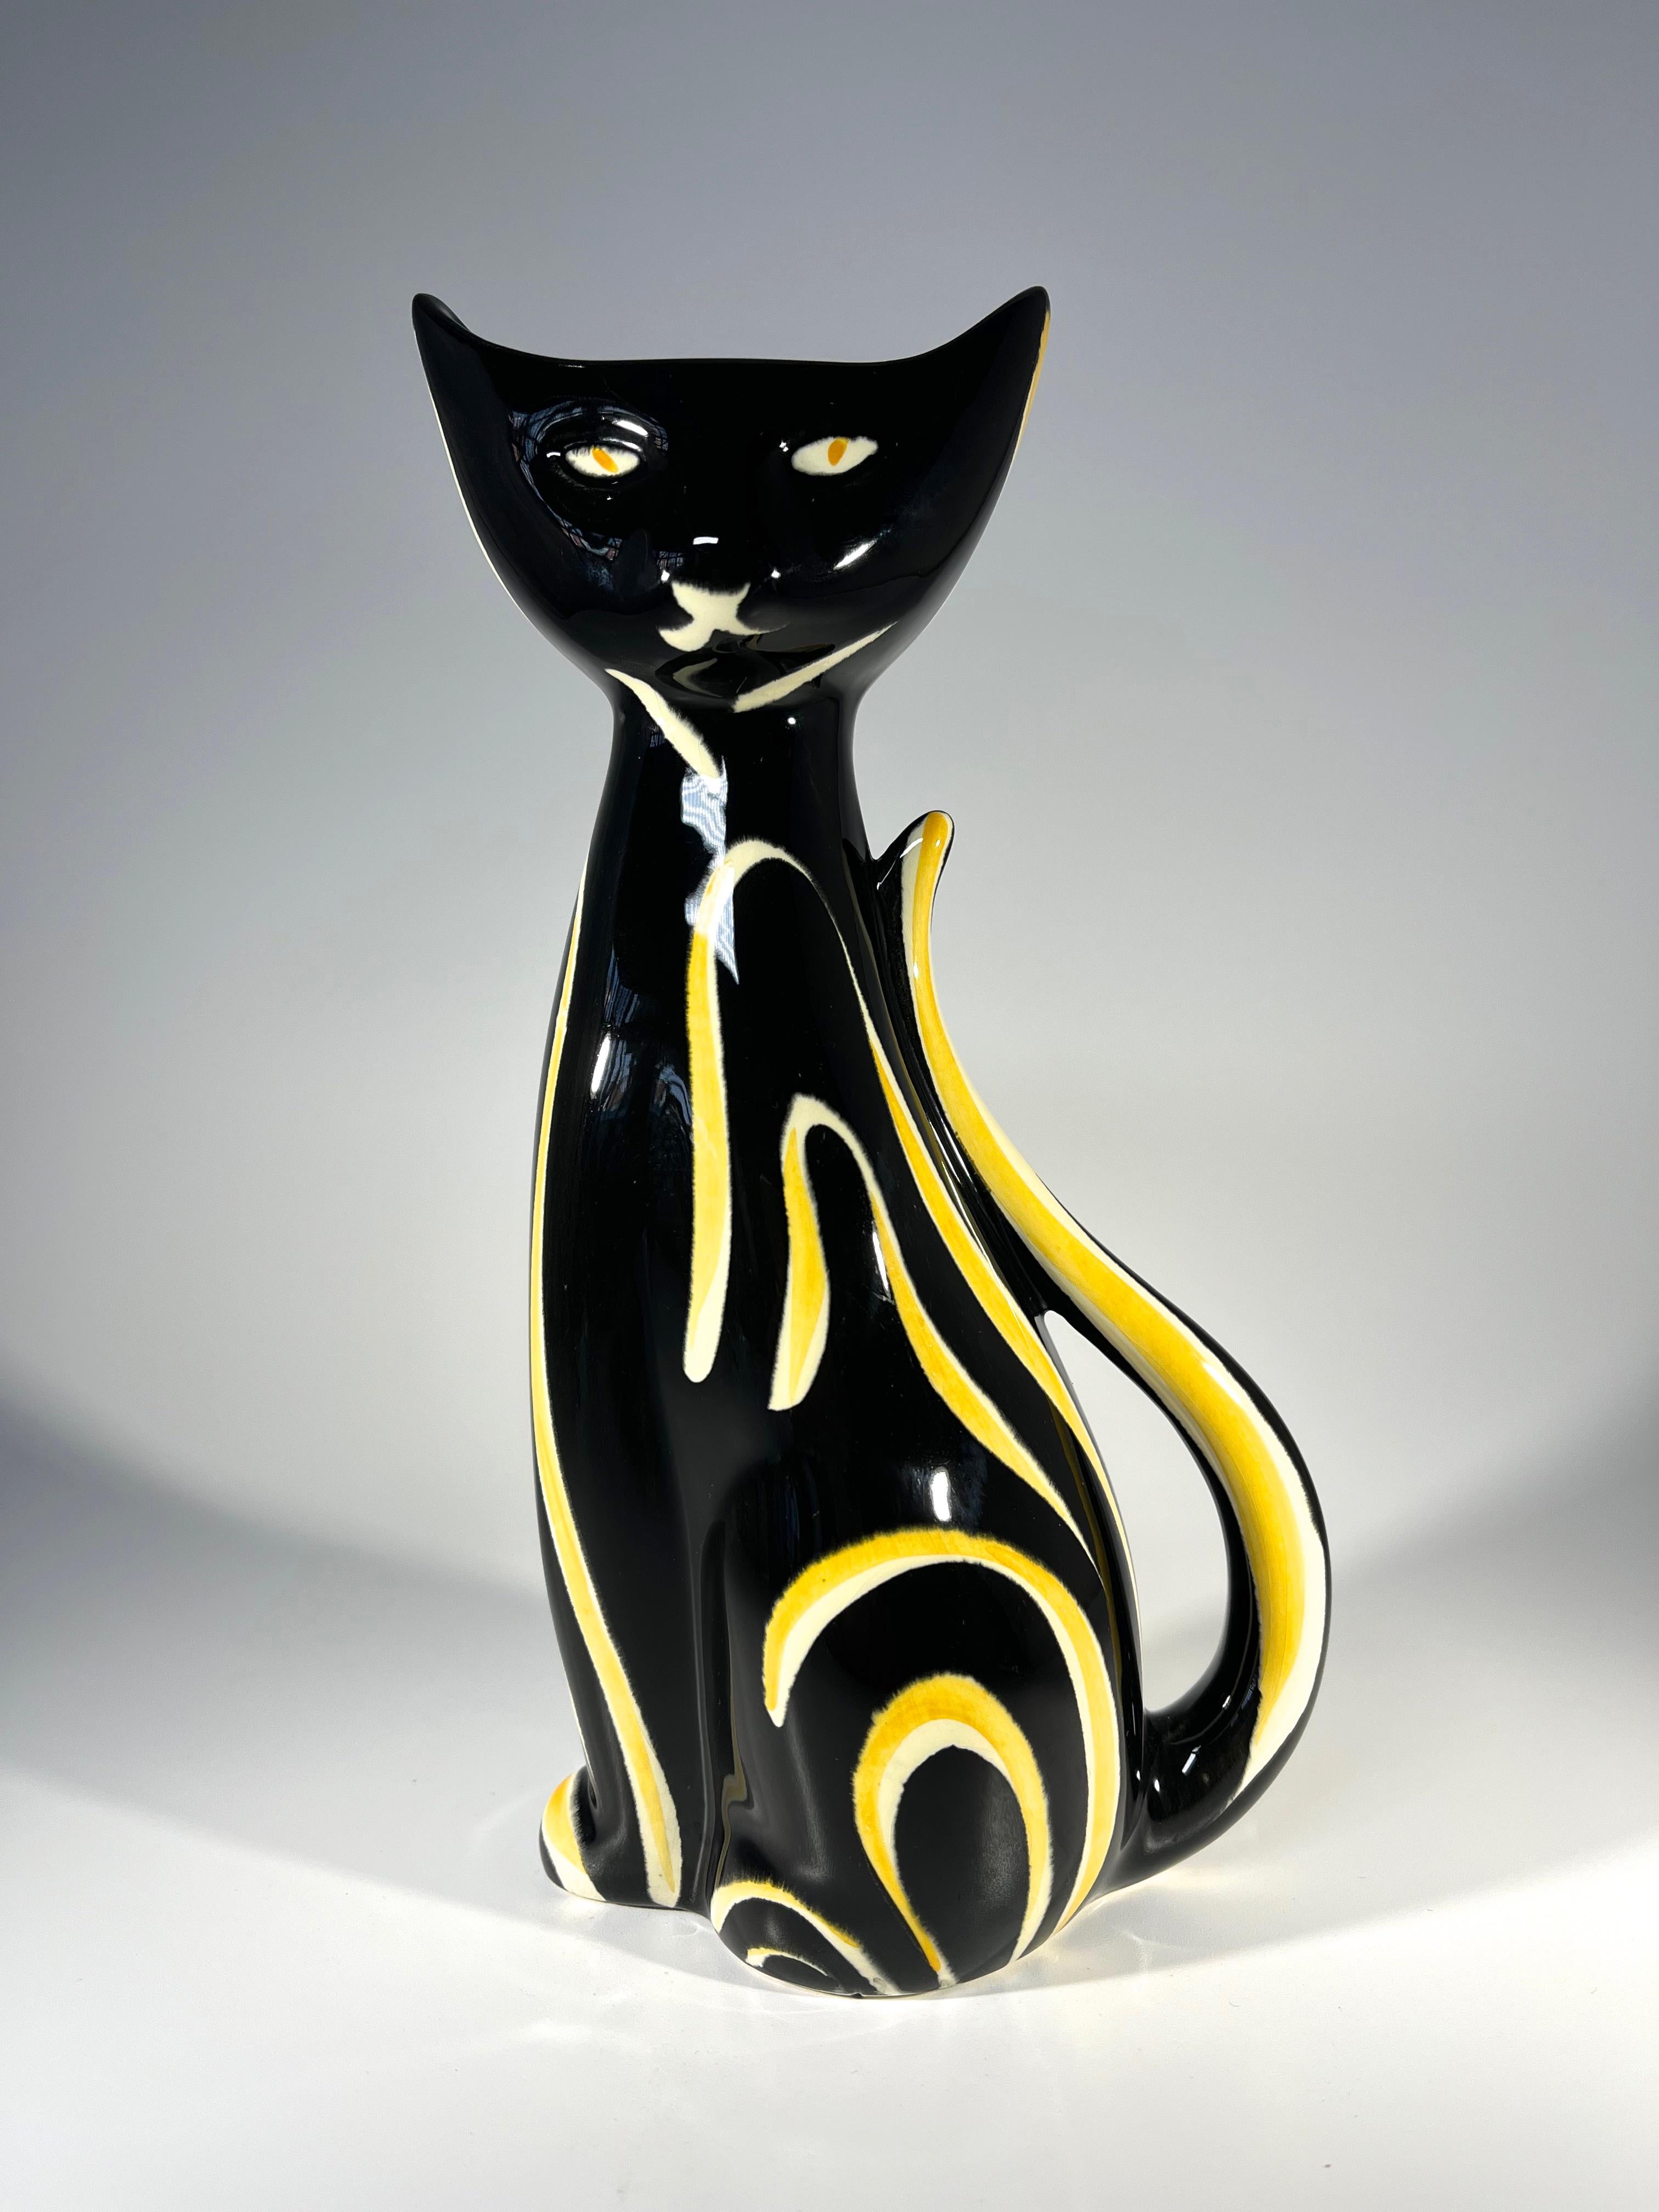 Auffällige schwarz-gelbe Tigris-Katzenvase, entworfen von Anneleise Beckh für das westdeutsche Unternehmen Schmider Keramik
Unerschütterlicher Ausdruck auf diesem starken Retro-Designstück
CIRCA 1950er Jahre
Nummerierung 4310 bis Basis
Höhe 8,5